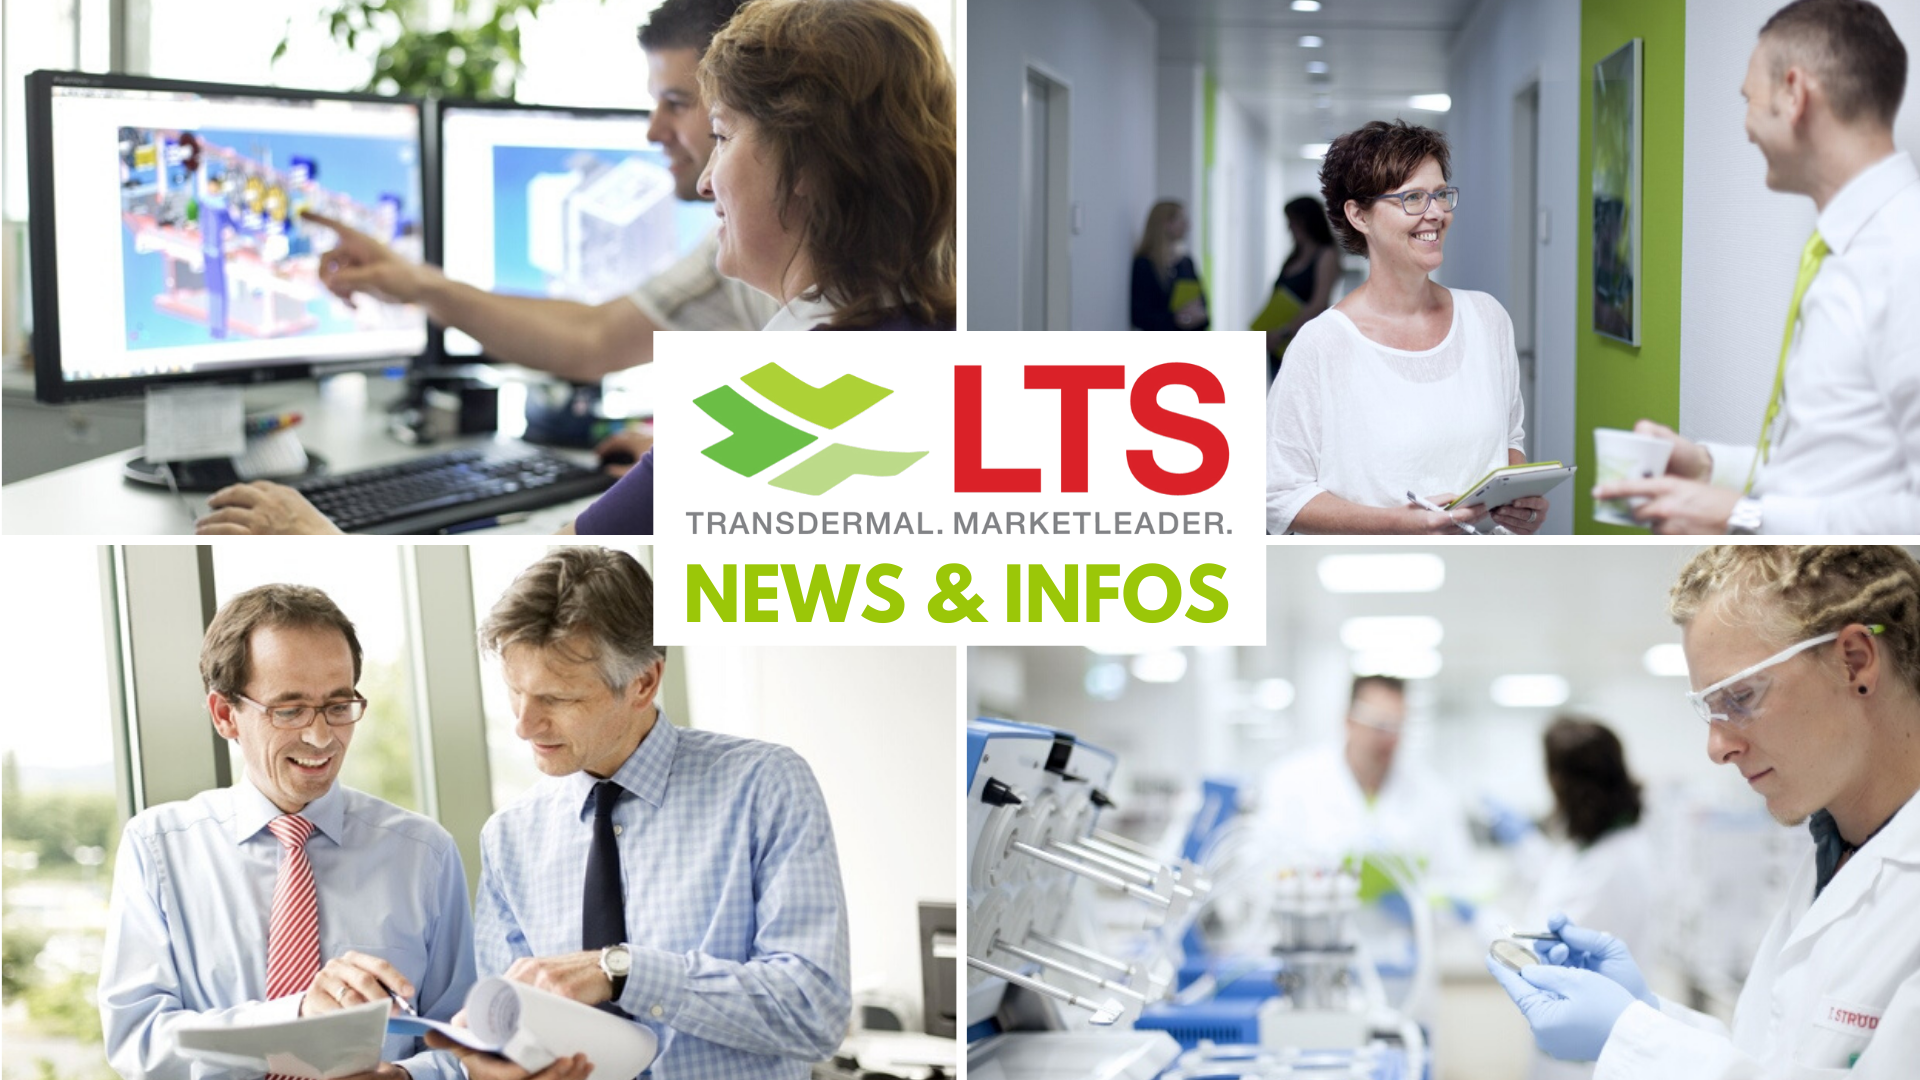 Finden Sie mehr News und Infos über LTS